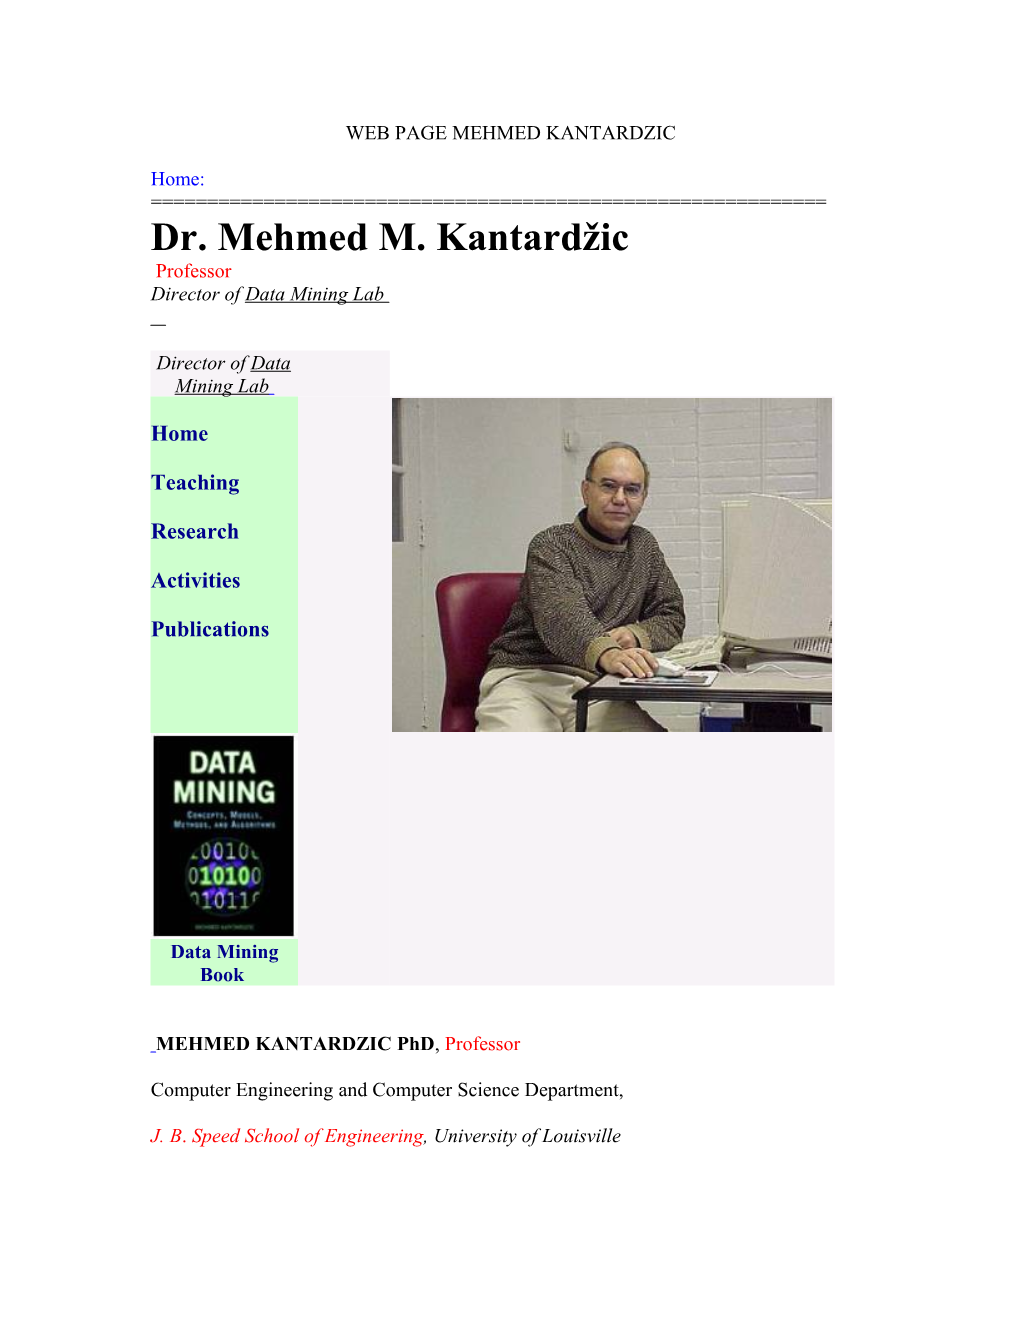 Web Page Mehmed Kantardzic